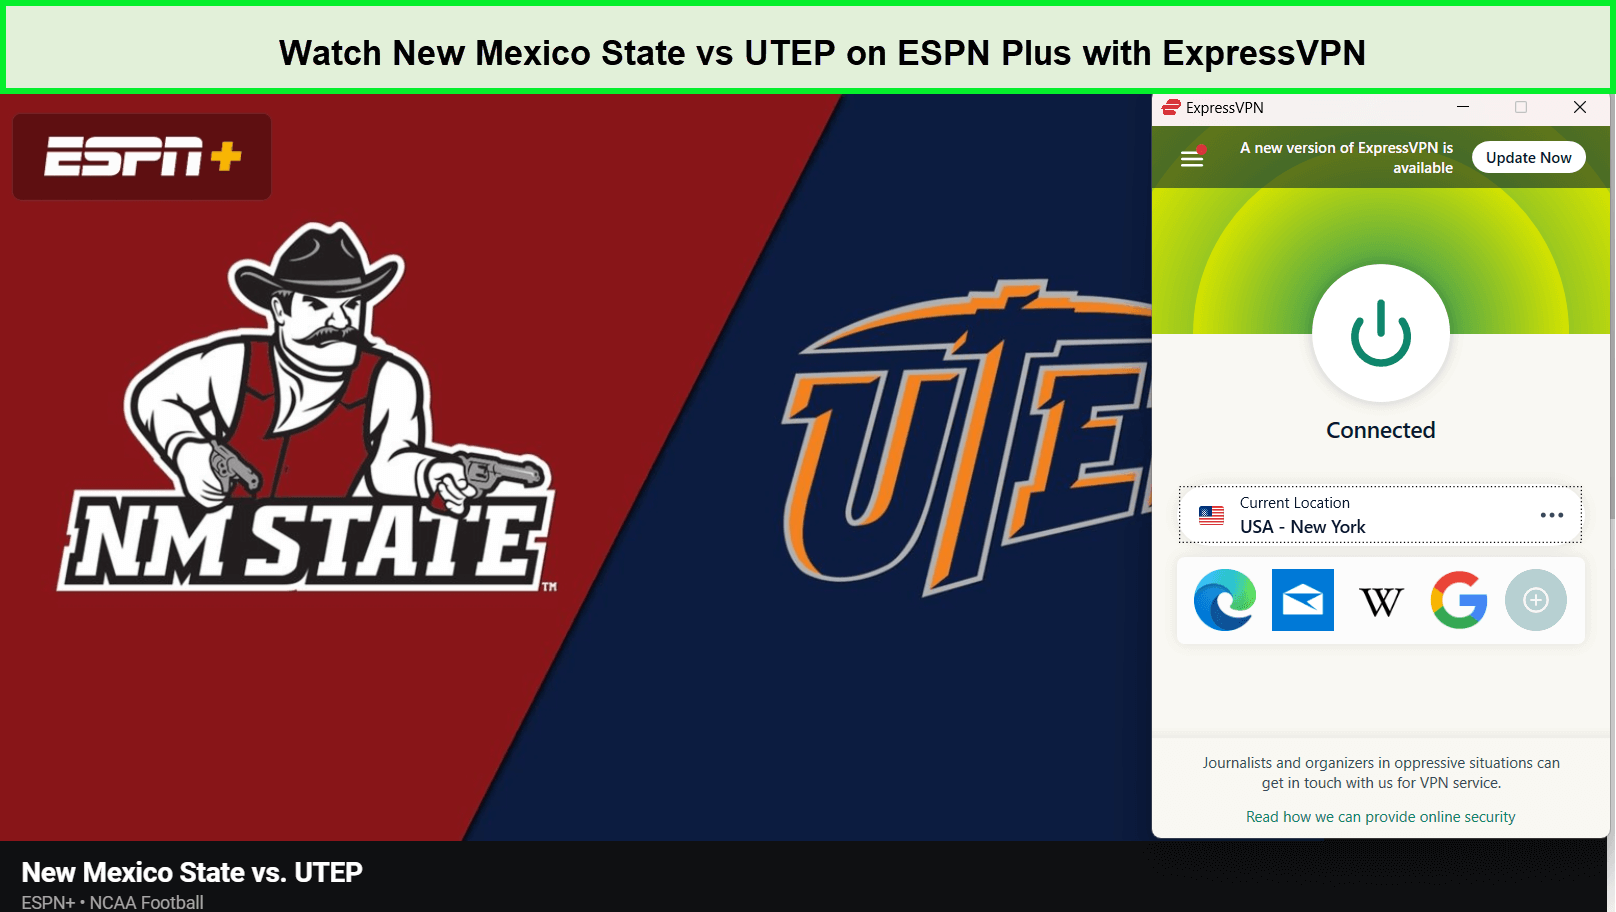  Ver-Nuevo-México-Estado-contra-UTEP- in - Espana -en-ESPN-Plus-con-ExpressVPN 